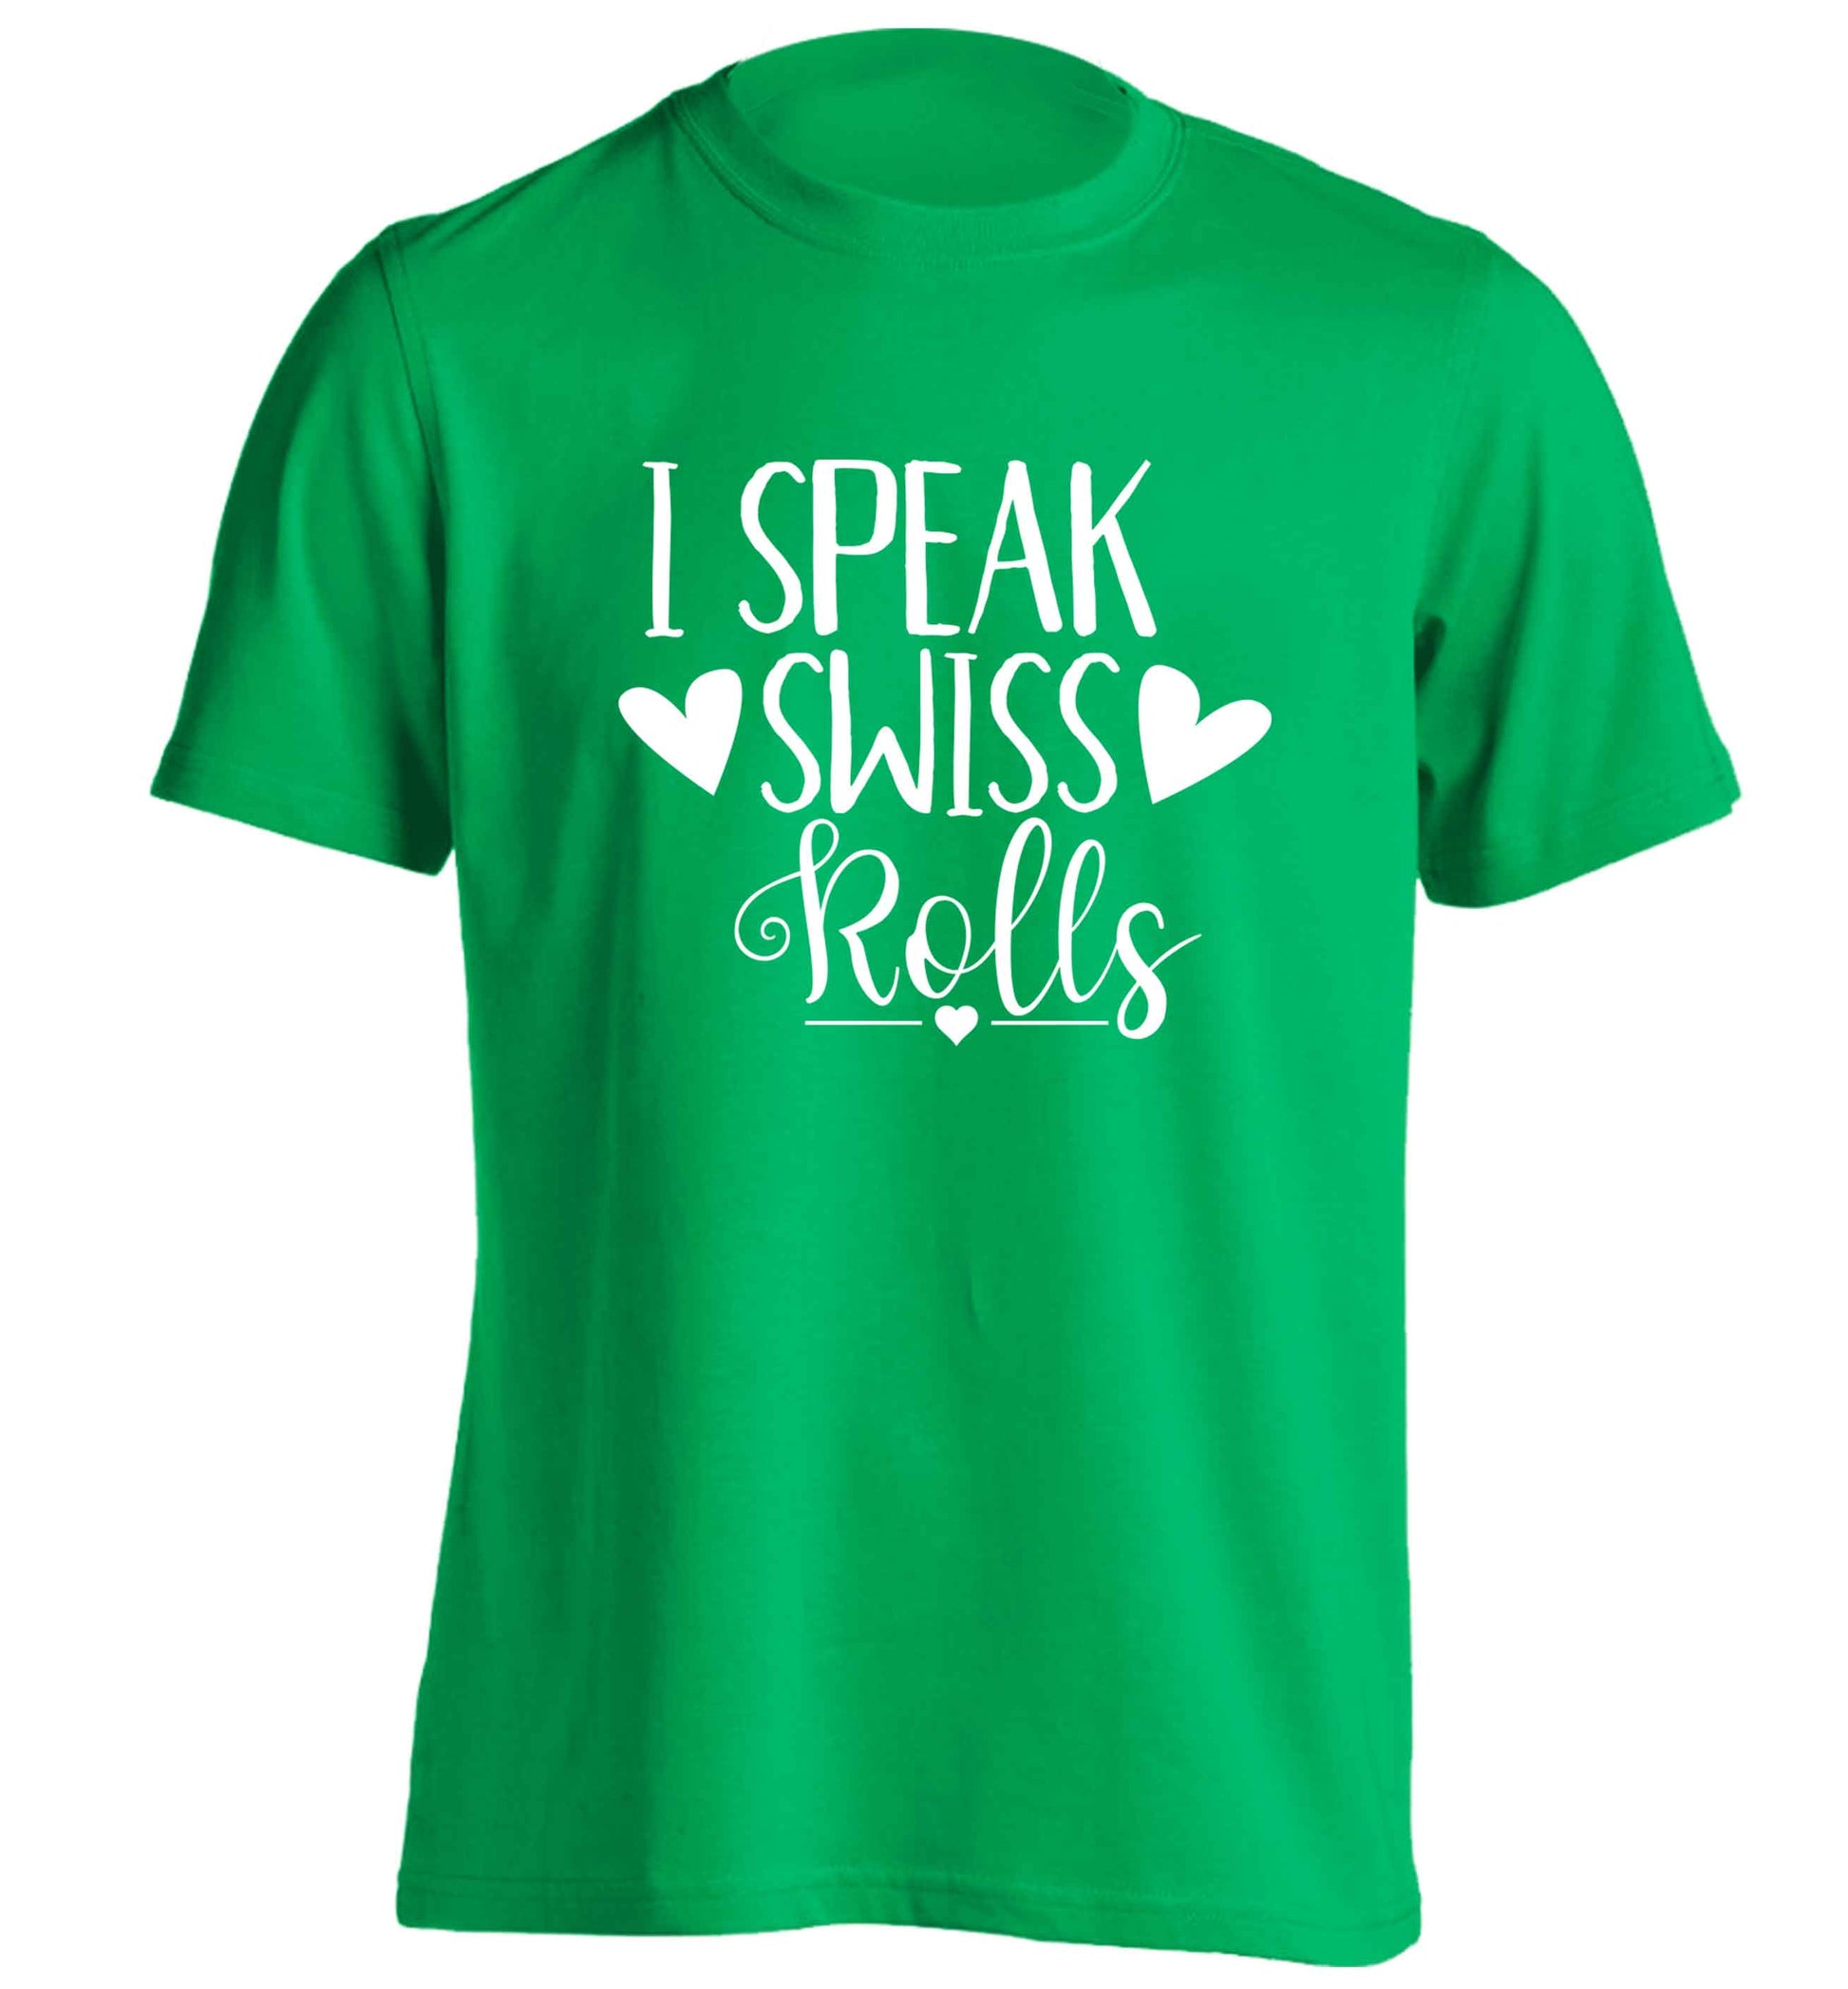 I speak swiss..rolls adults unisex green Tshirt 2XL